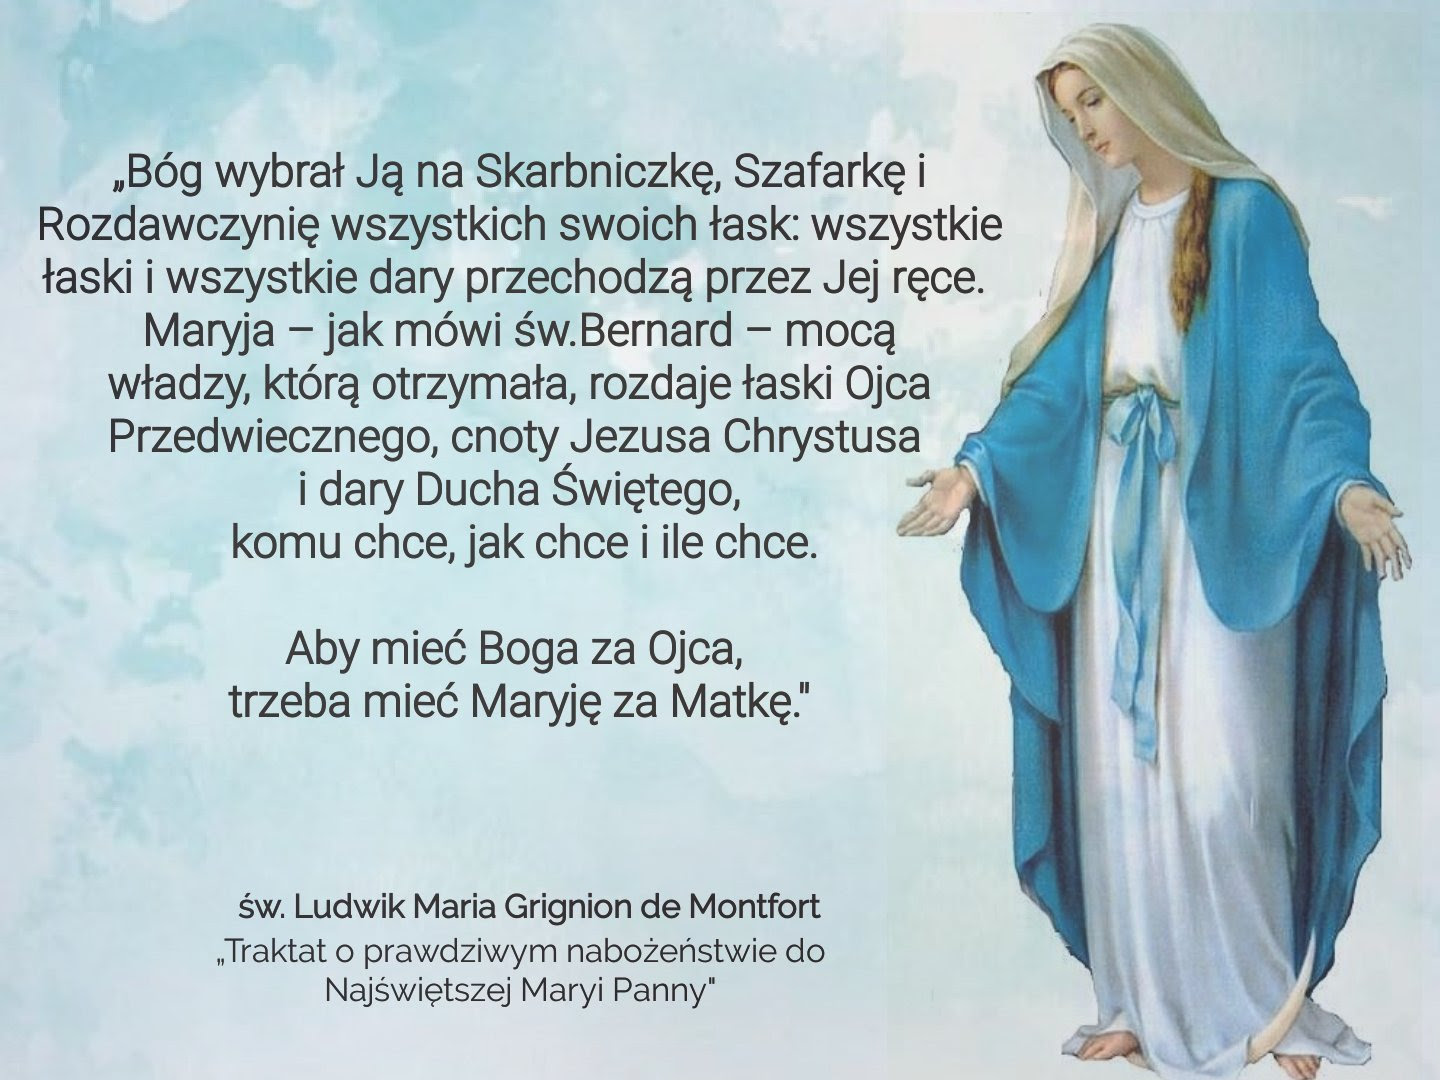 33-dniowy okres ćwiczeń duchowych do Aktu Ofiarowania się Jezusowi  Chrystusowi przez Maryję – NiewolnikMaryi.com